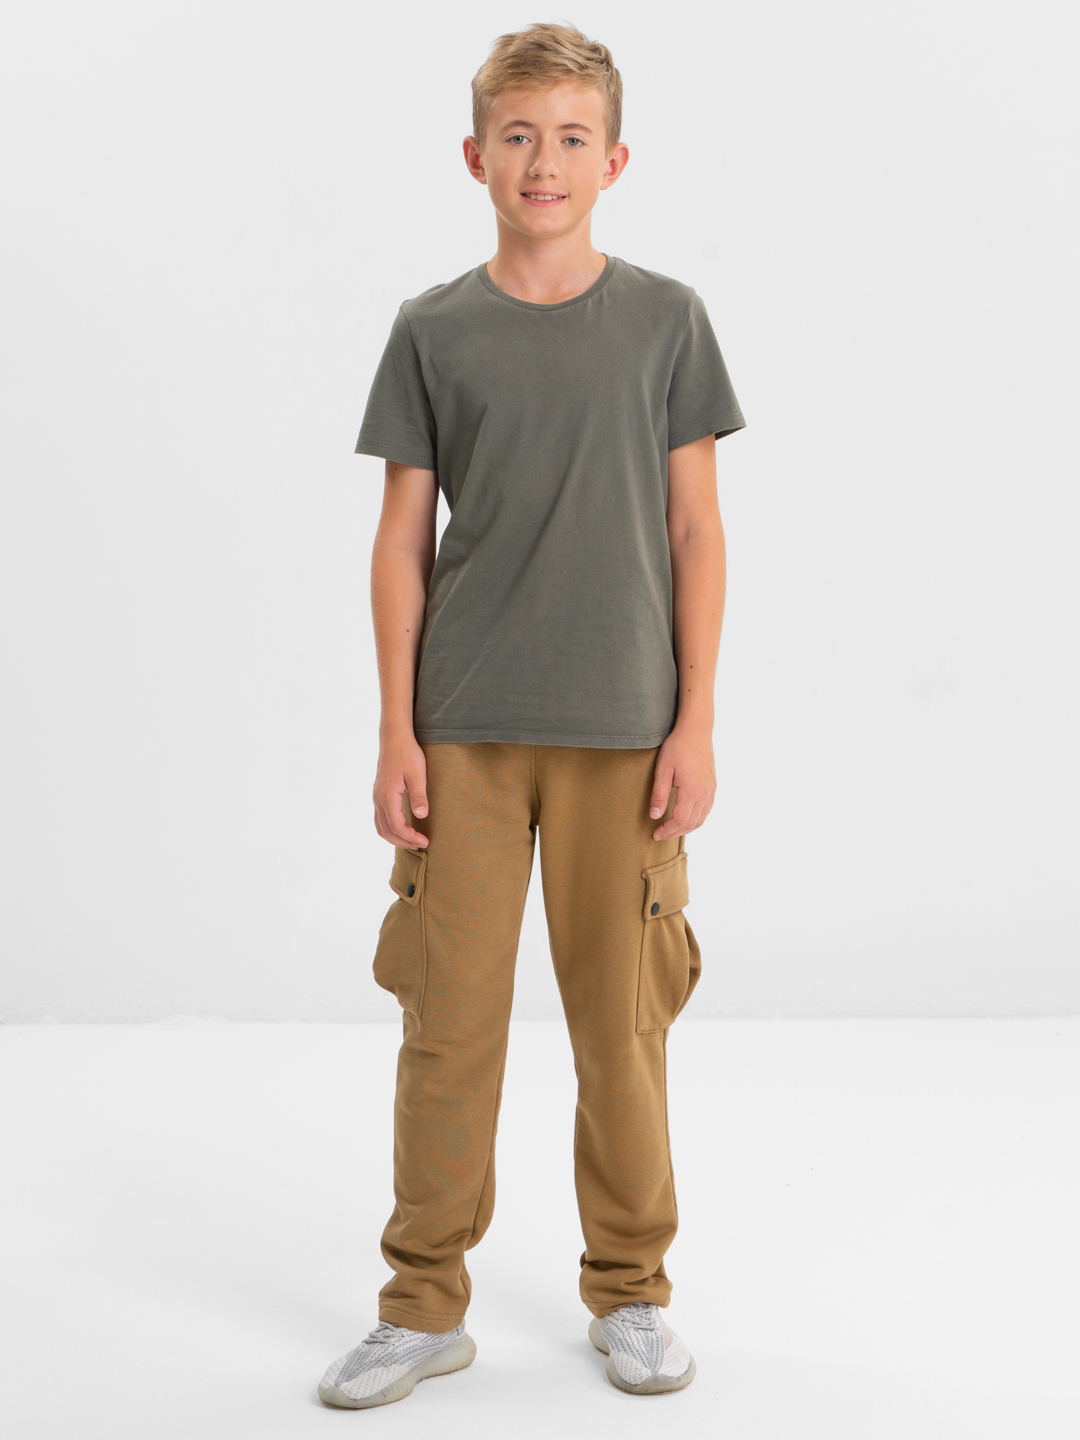 Спортивные штаны, брюки для мальчика подростка без начеса с карманамикупить по цене 1990 ₽ в интернет-магазине KazanExpress